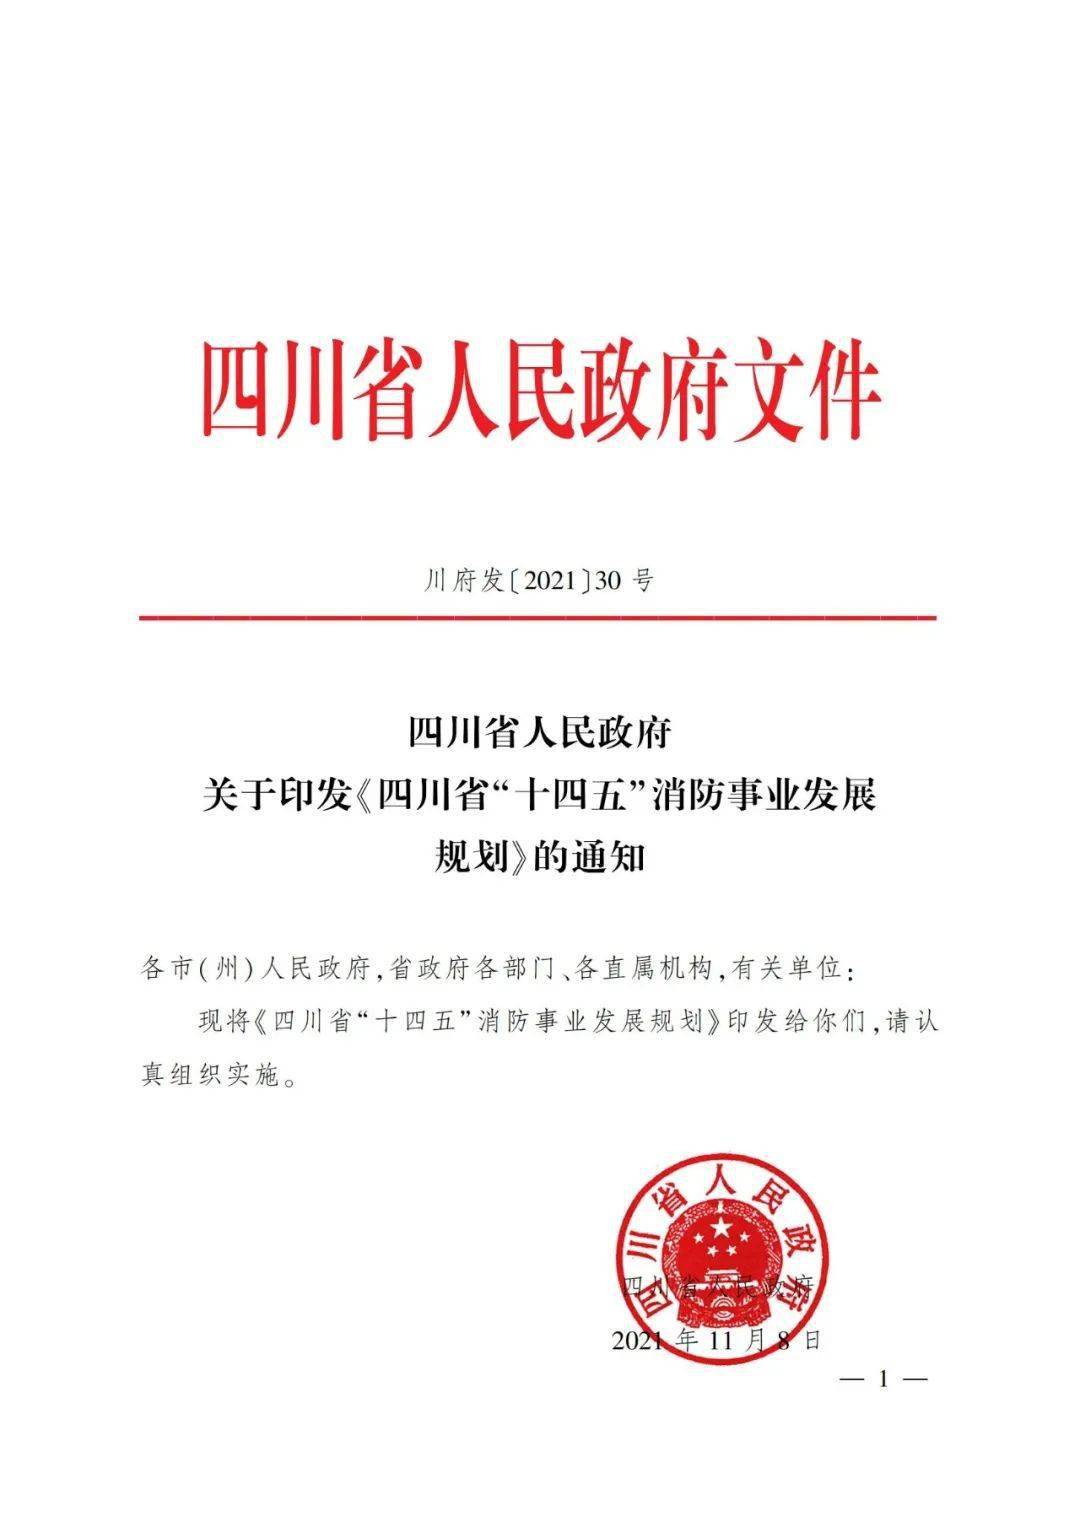 四川省人民政府文件图片